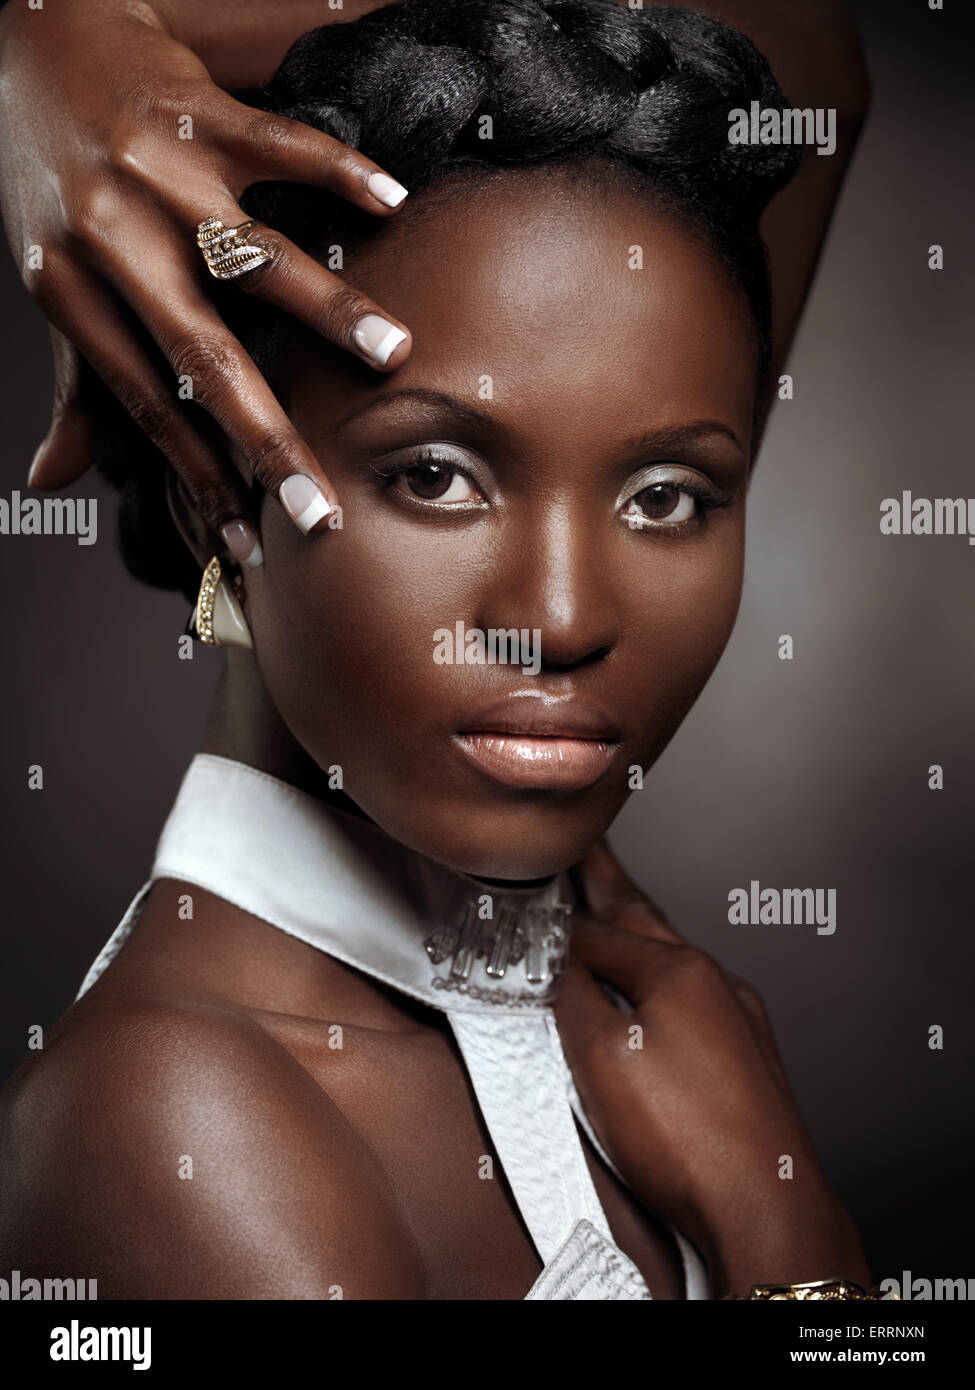 Licencia y grabados en MaximImages.com - Exprensor retrato artístico de una bella cara negra afro-americana Foto de stock